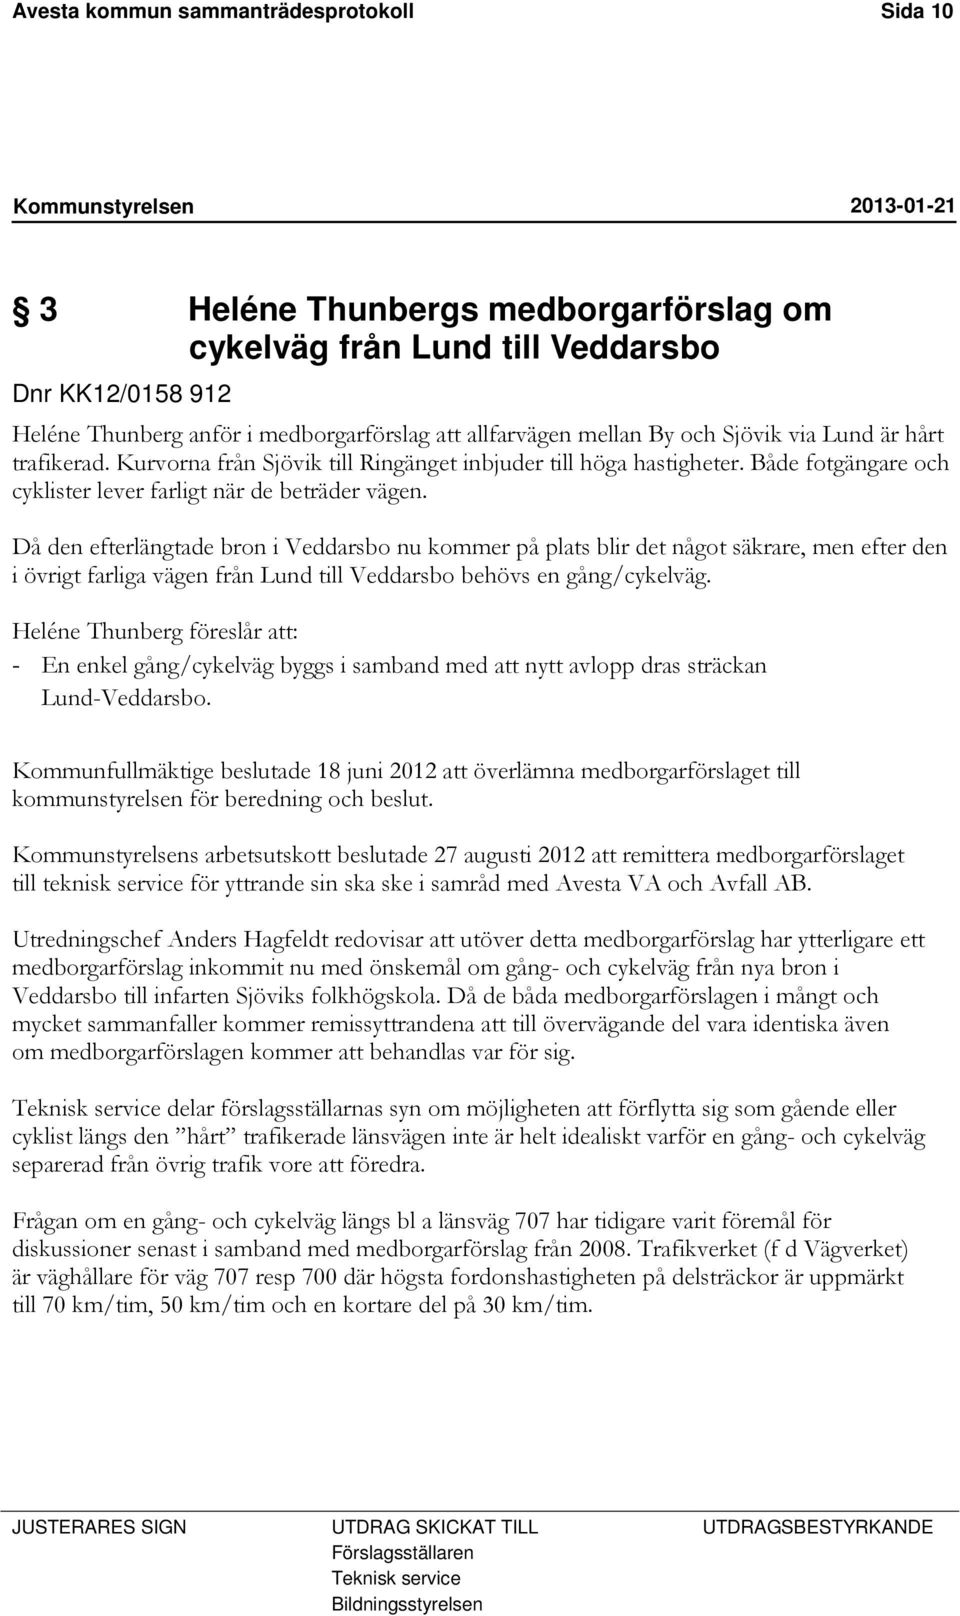 Då den efterlängtade bron i Veddarsbo nu kommer på plats blir det något säkrare, men efter den i övrigt farliga vägen från Lund till Veddarsbo behövs en gång/cykelväg.